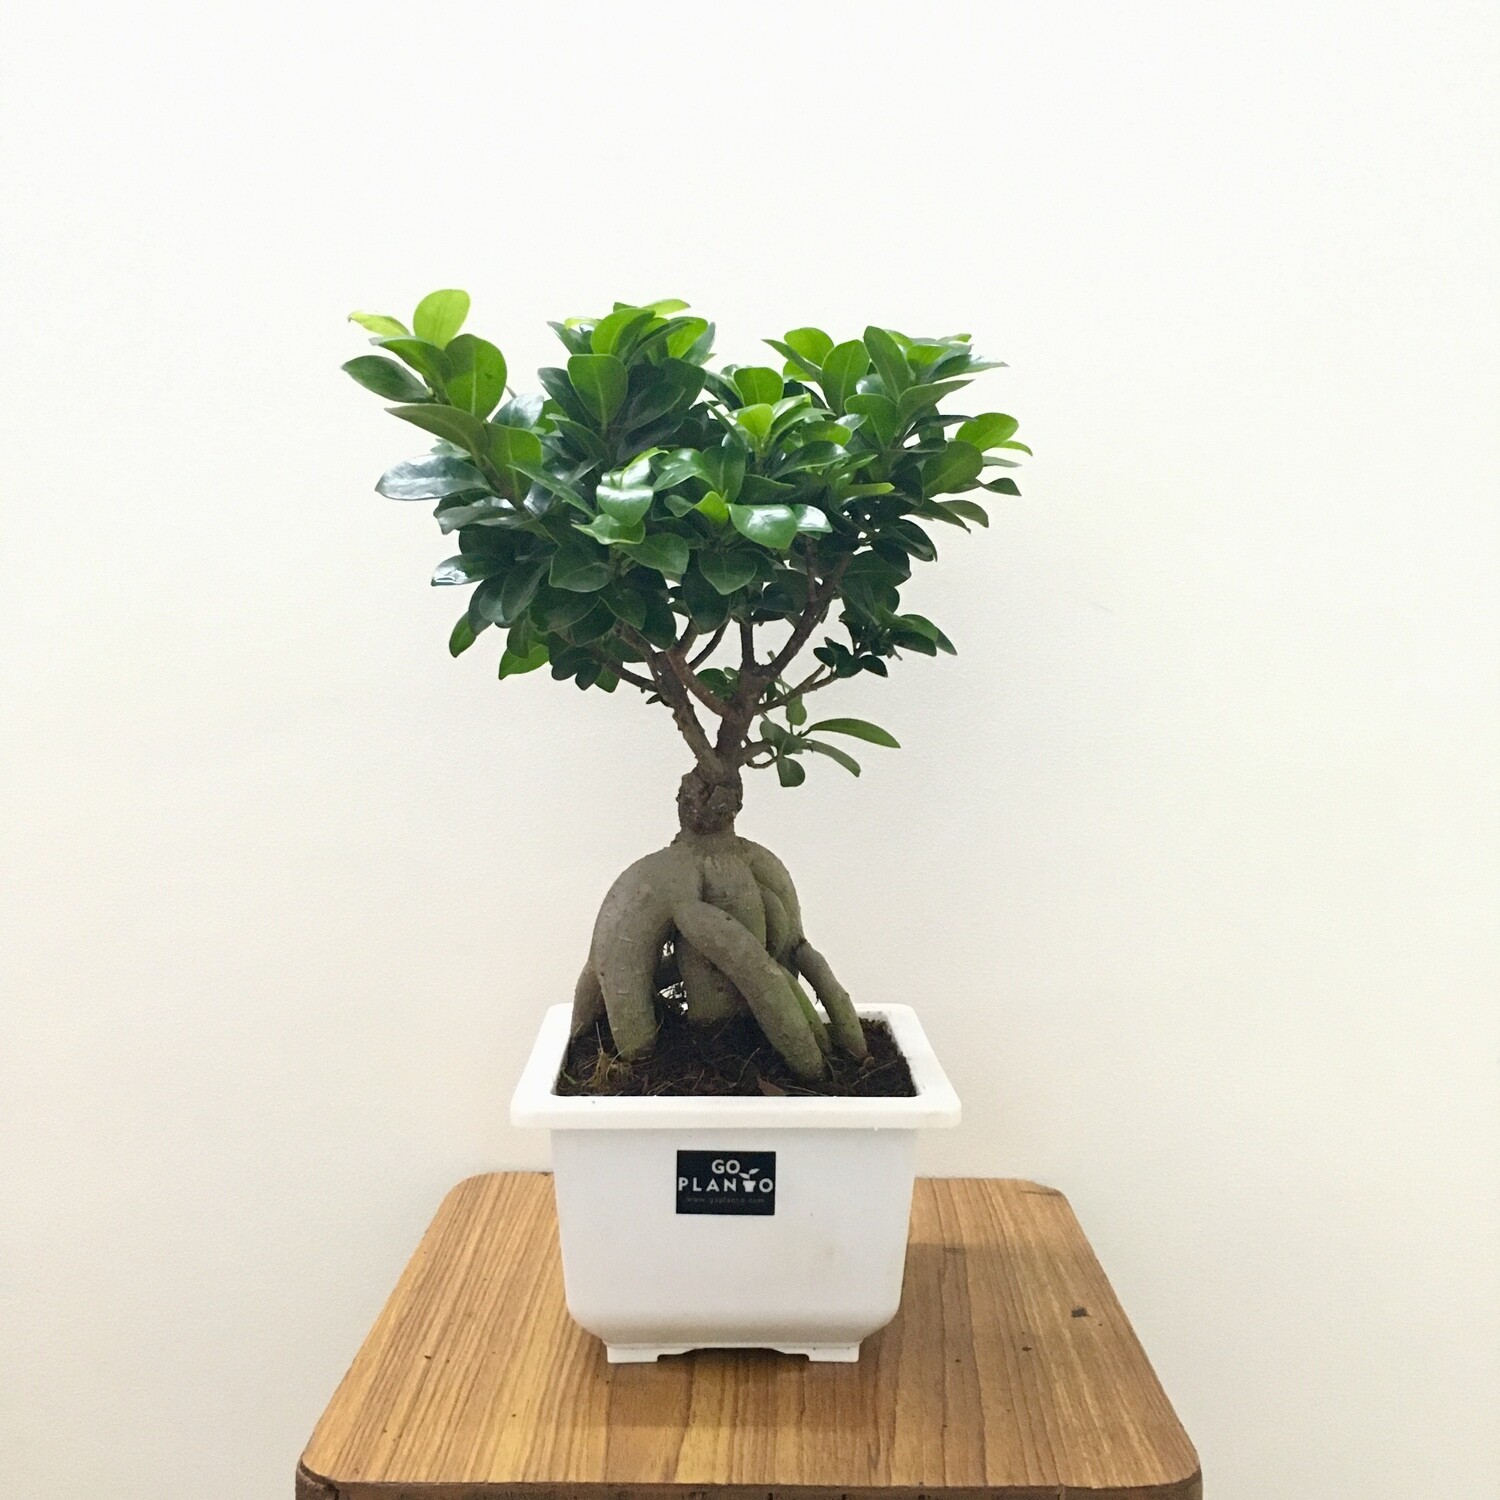 Ficus Bonsai Plant in 6 inches Square Pot